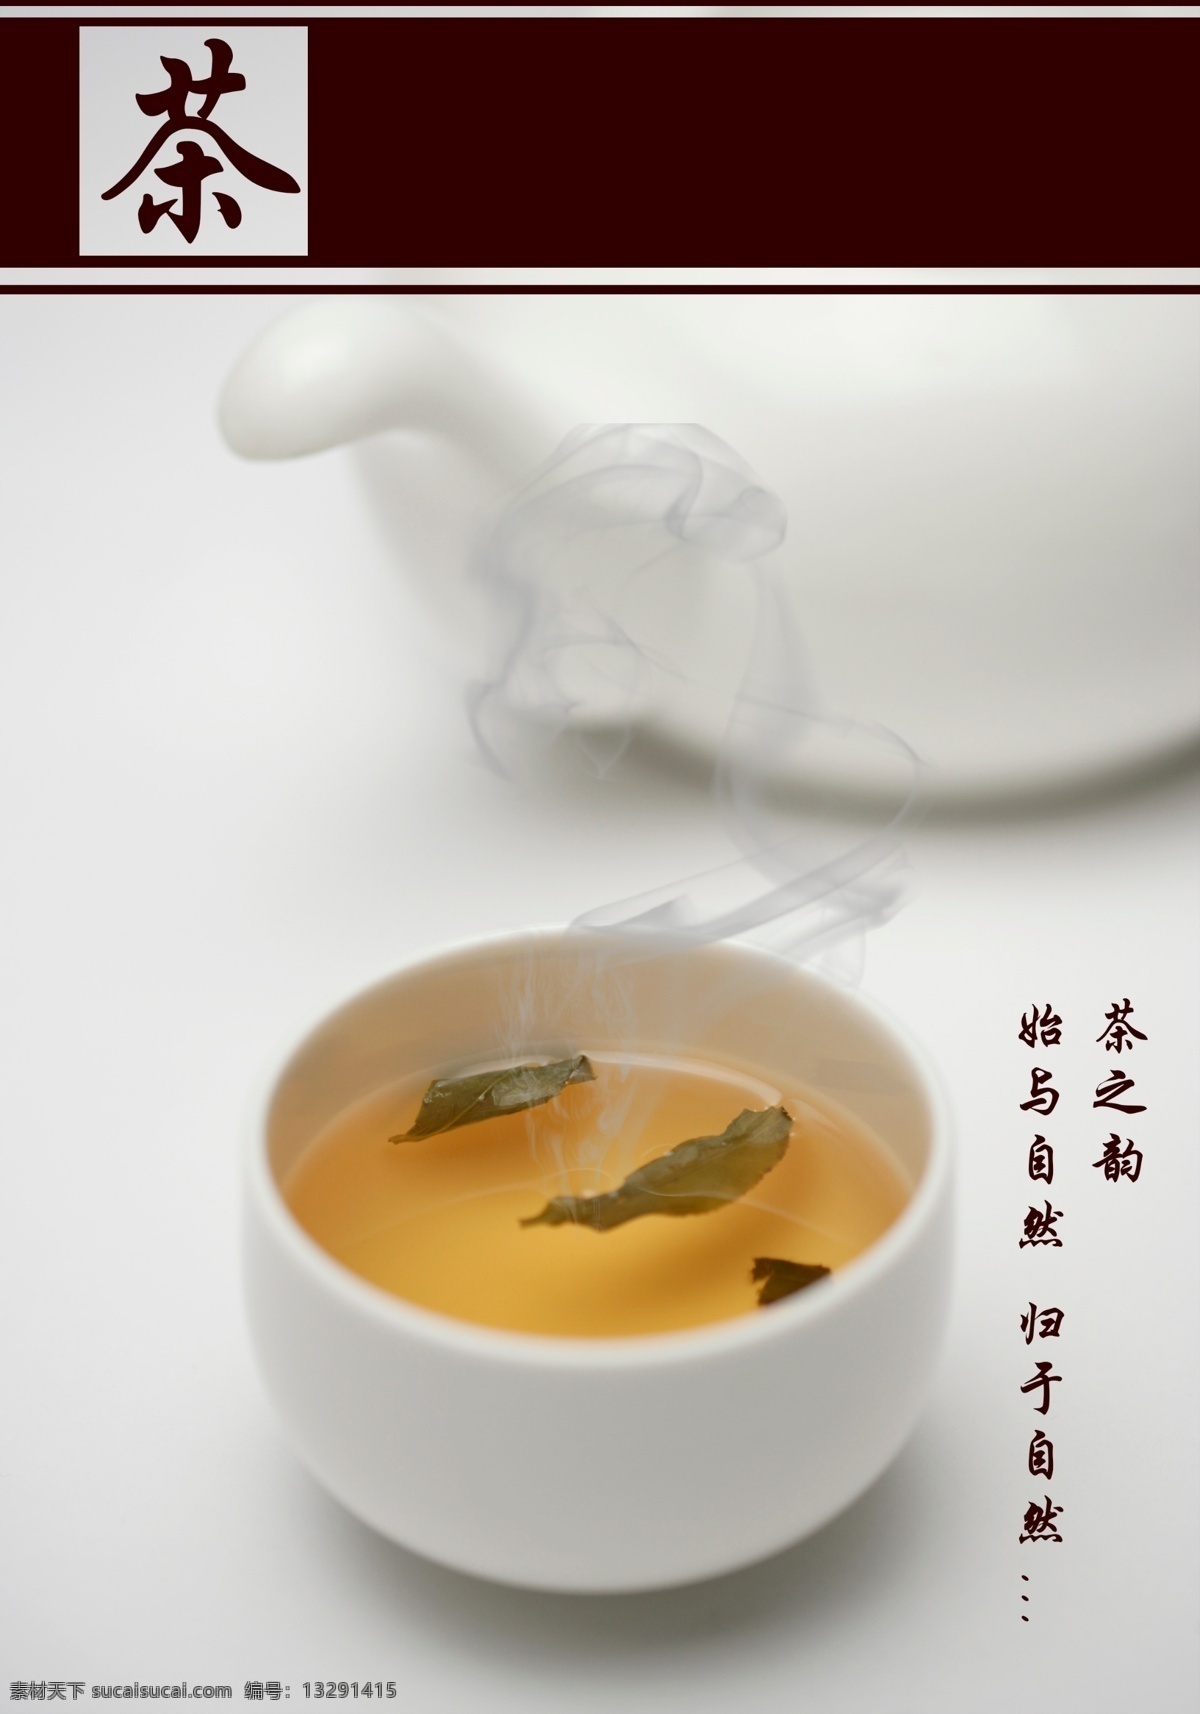 茶宣传广告 简约 质朴 茶 宣传海报 广告 茶之韵 自然 灰色